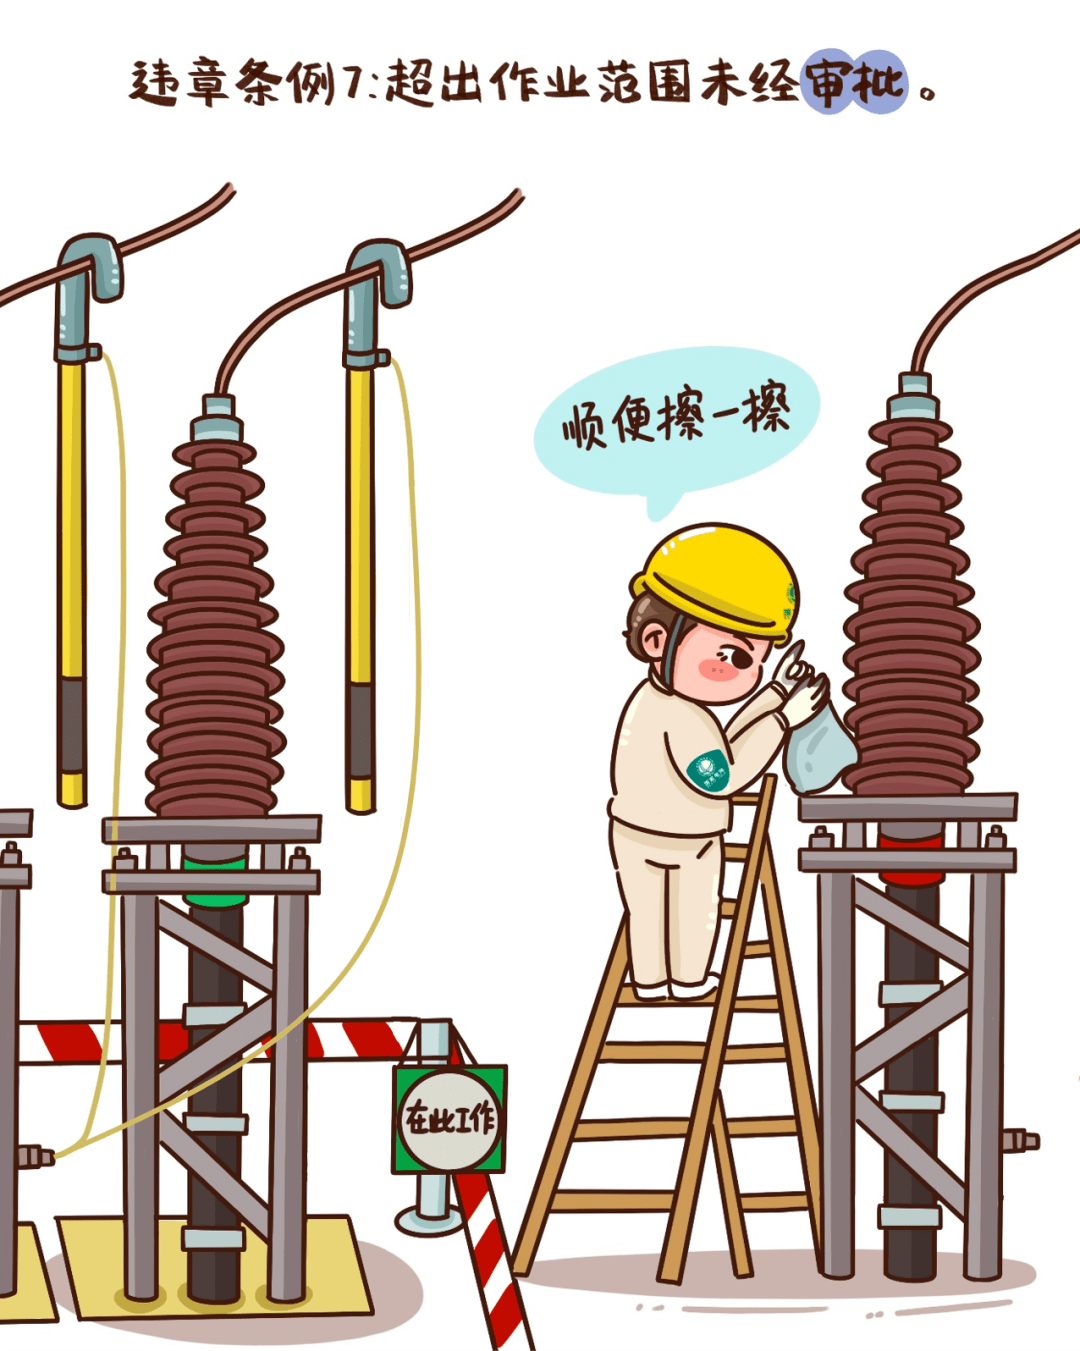 电力安全漫画小课堂——反违章(一)